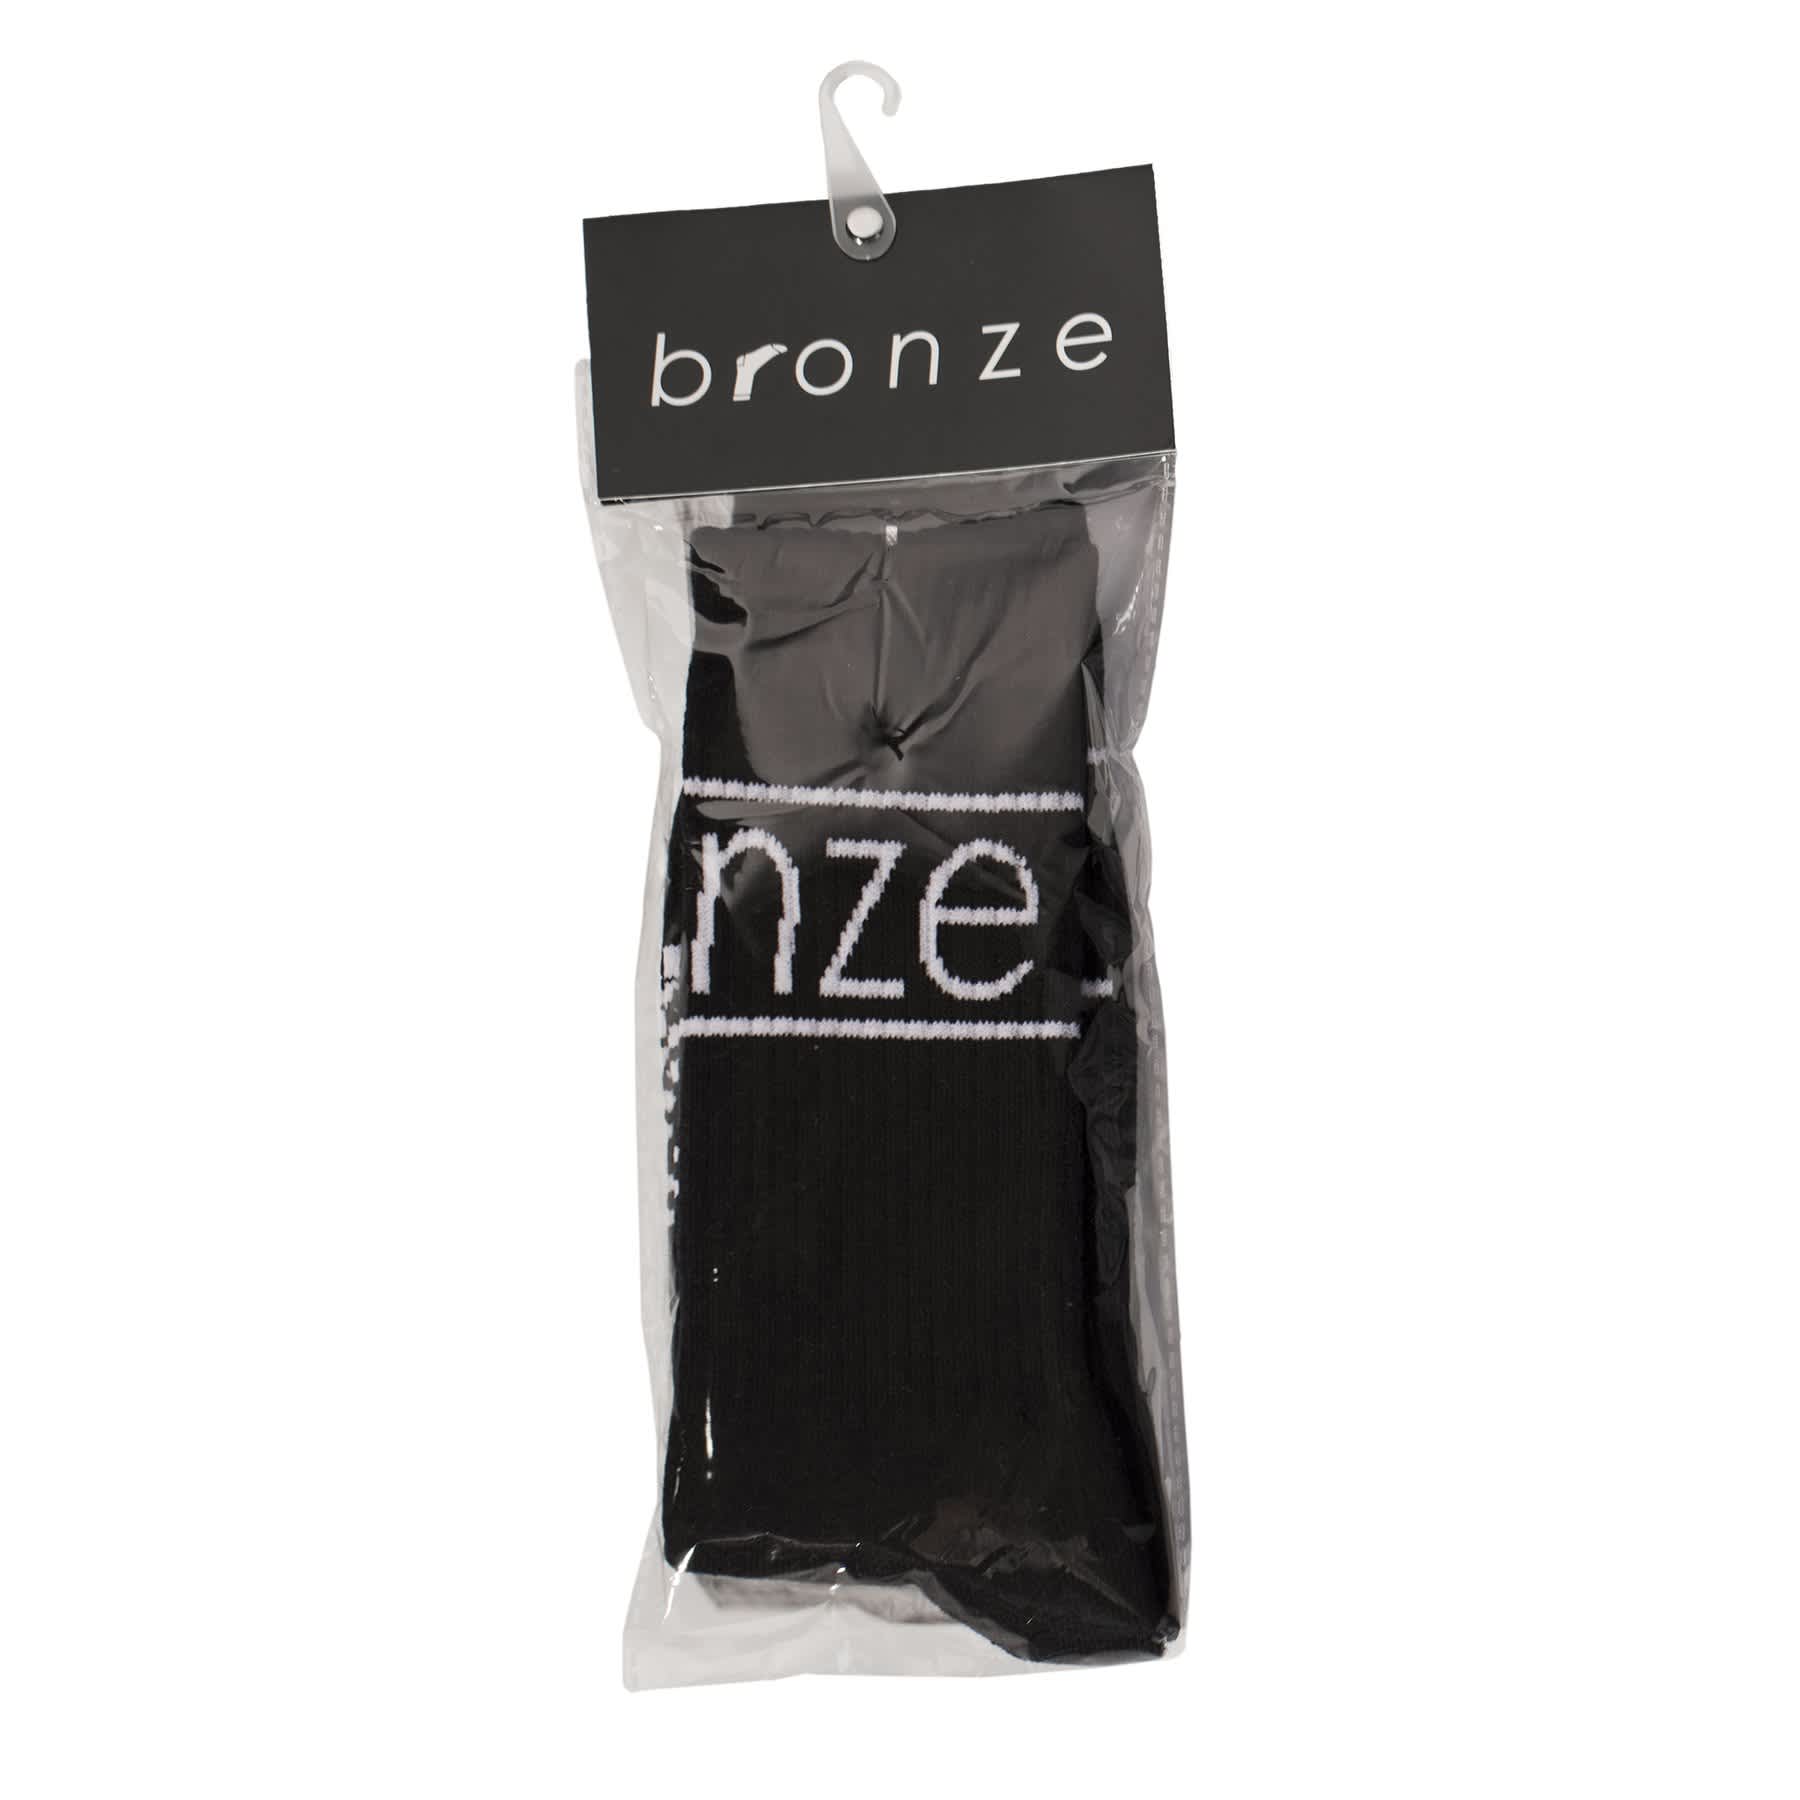 Bronze Socks, black - Tiki Room Skateboards - 2